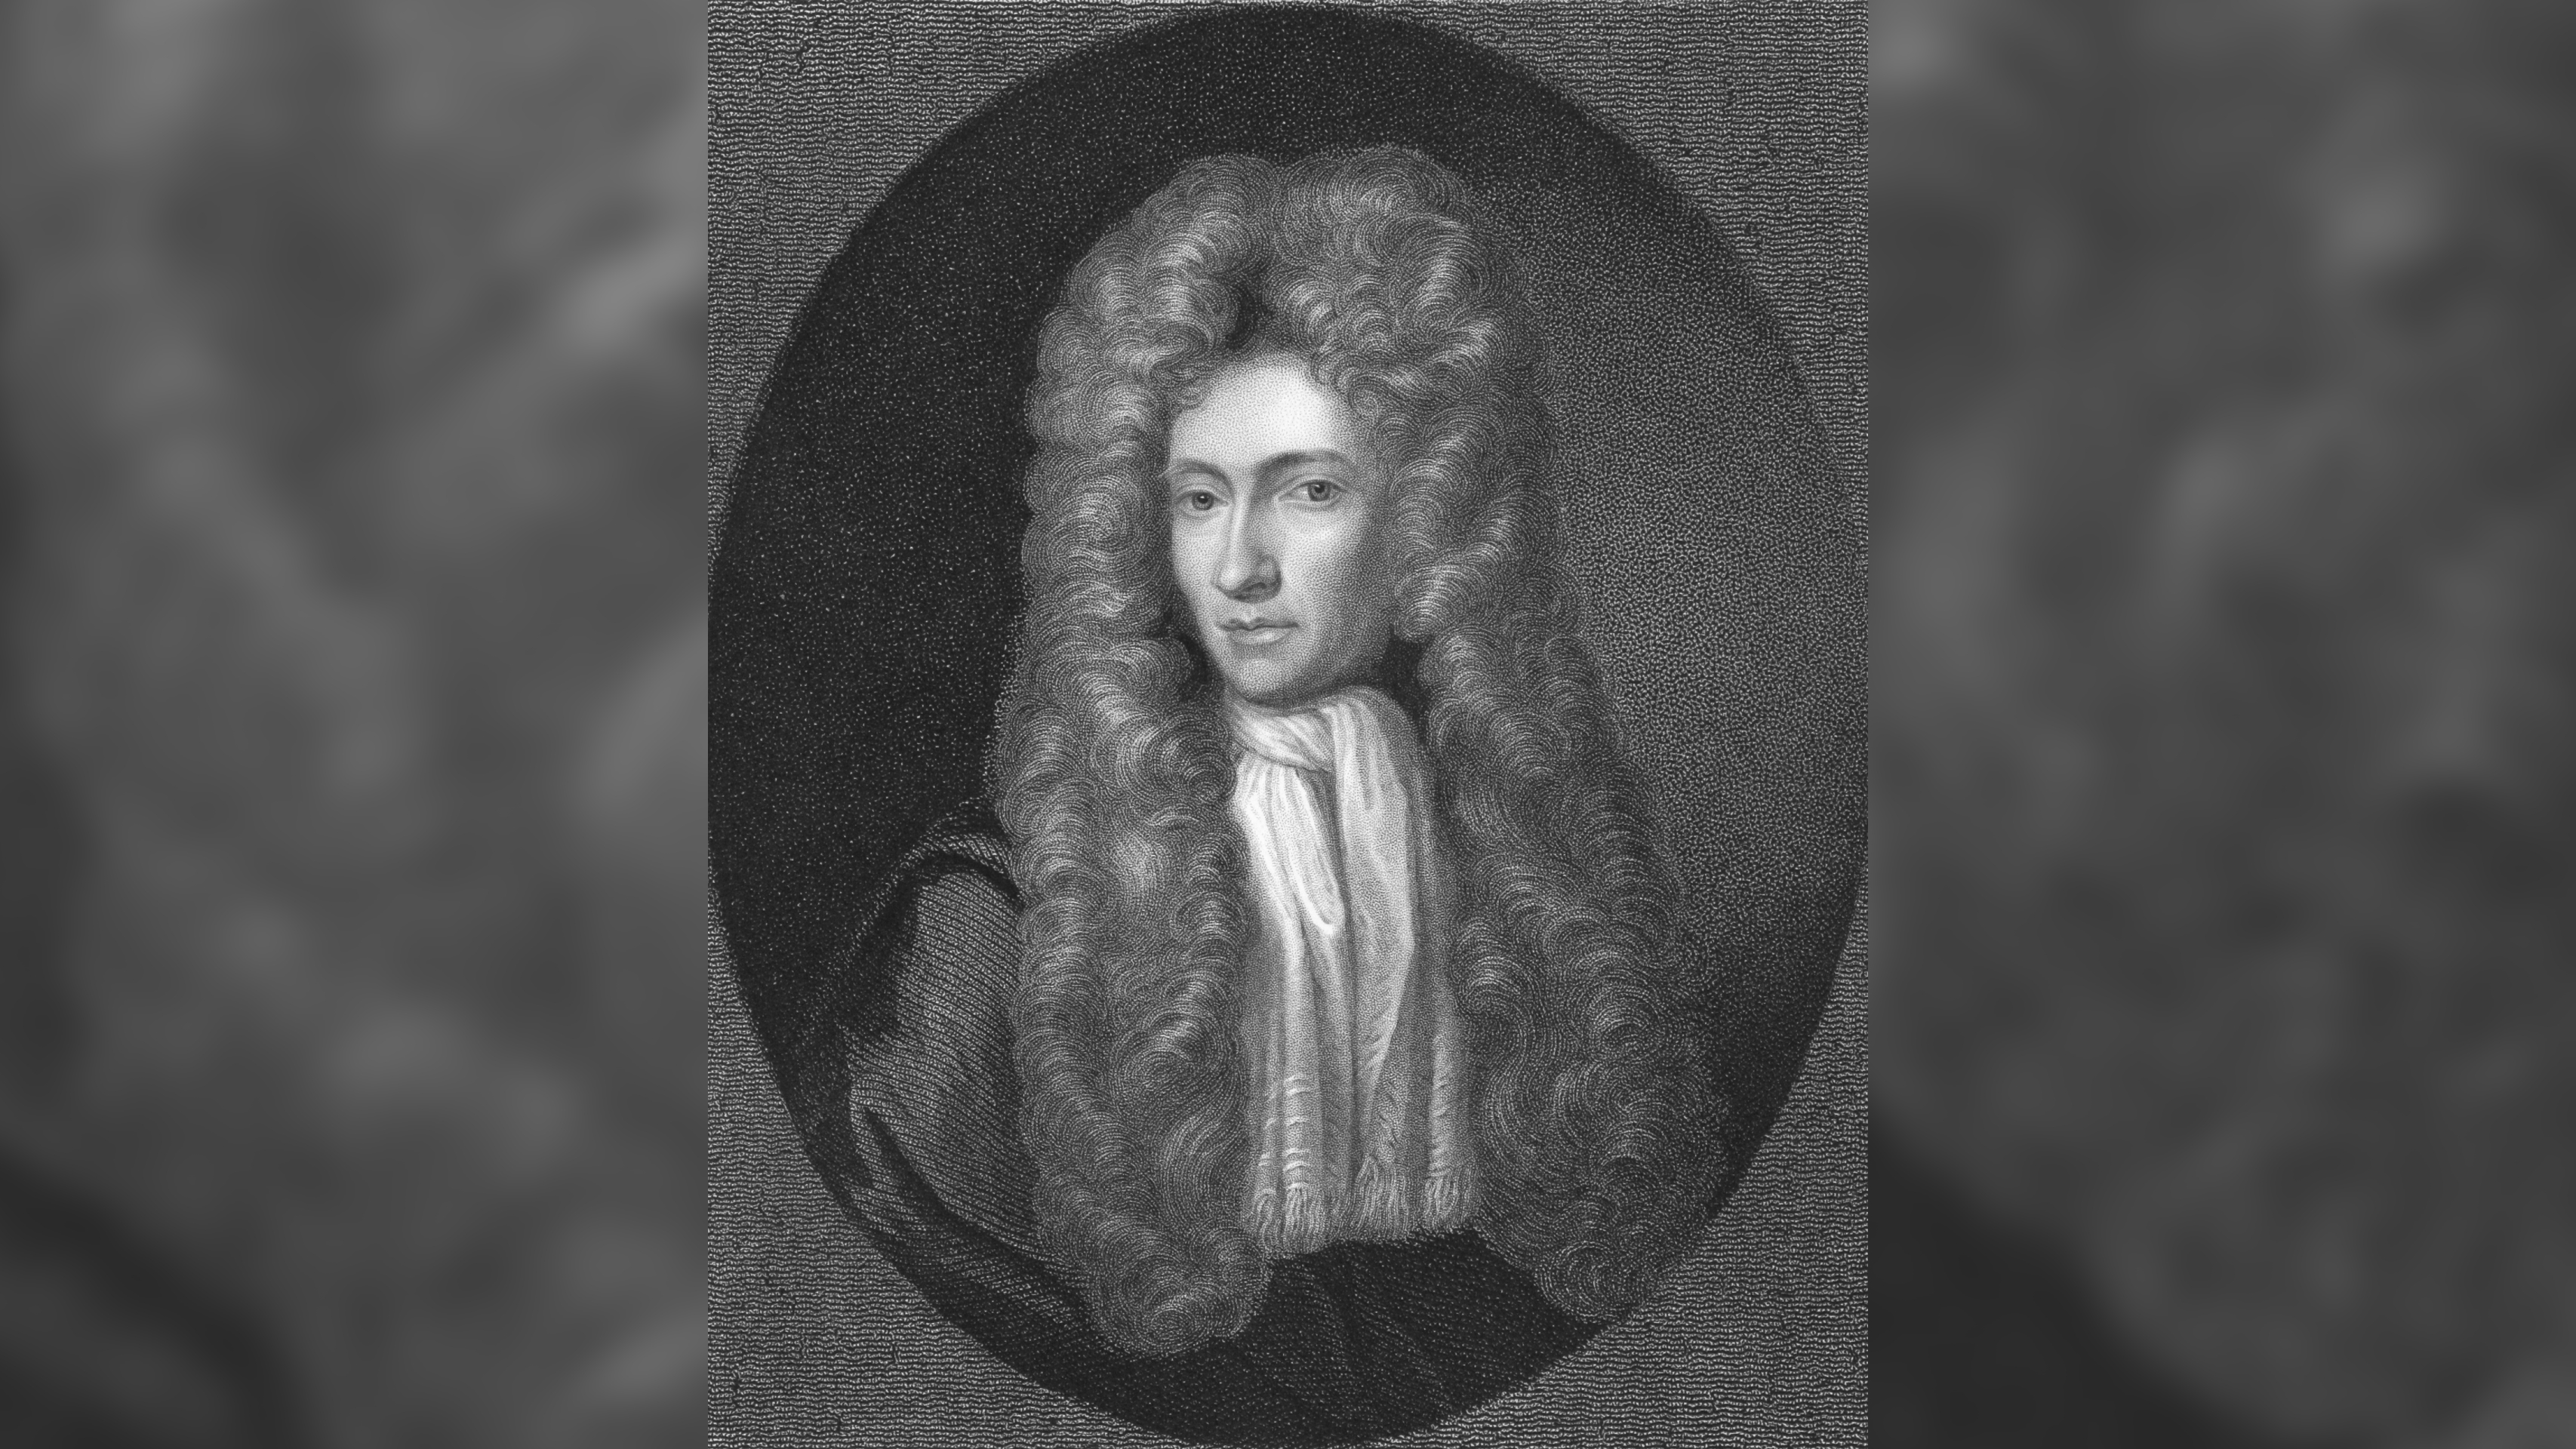 Der Chemiker Robert Boyle erklärte, dass bei konstant gehaltener Temperatur Volumen und Druck eine umgekehrte Beziehung haben;  das heißt, wenn das Volumen zunimmt, nimmt der Druck ab.  Dies ist als Gesetz von Boyle bekannt.